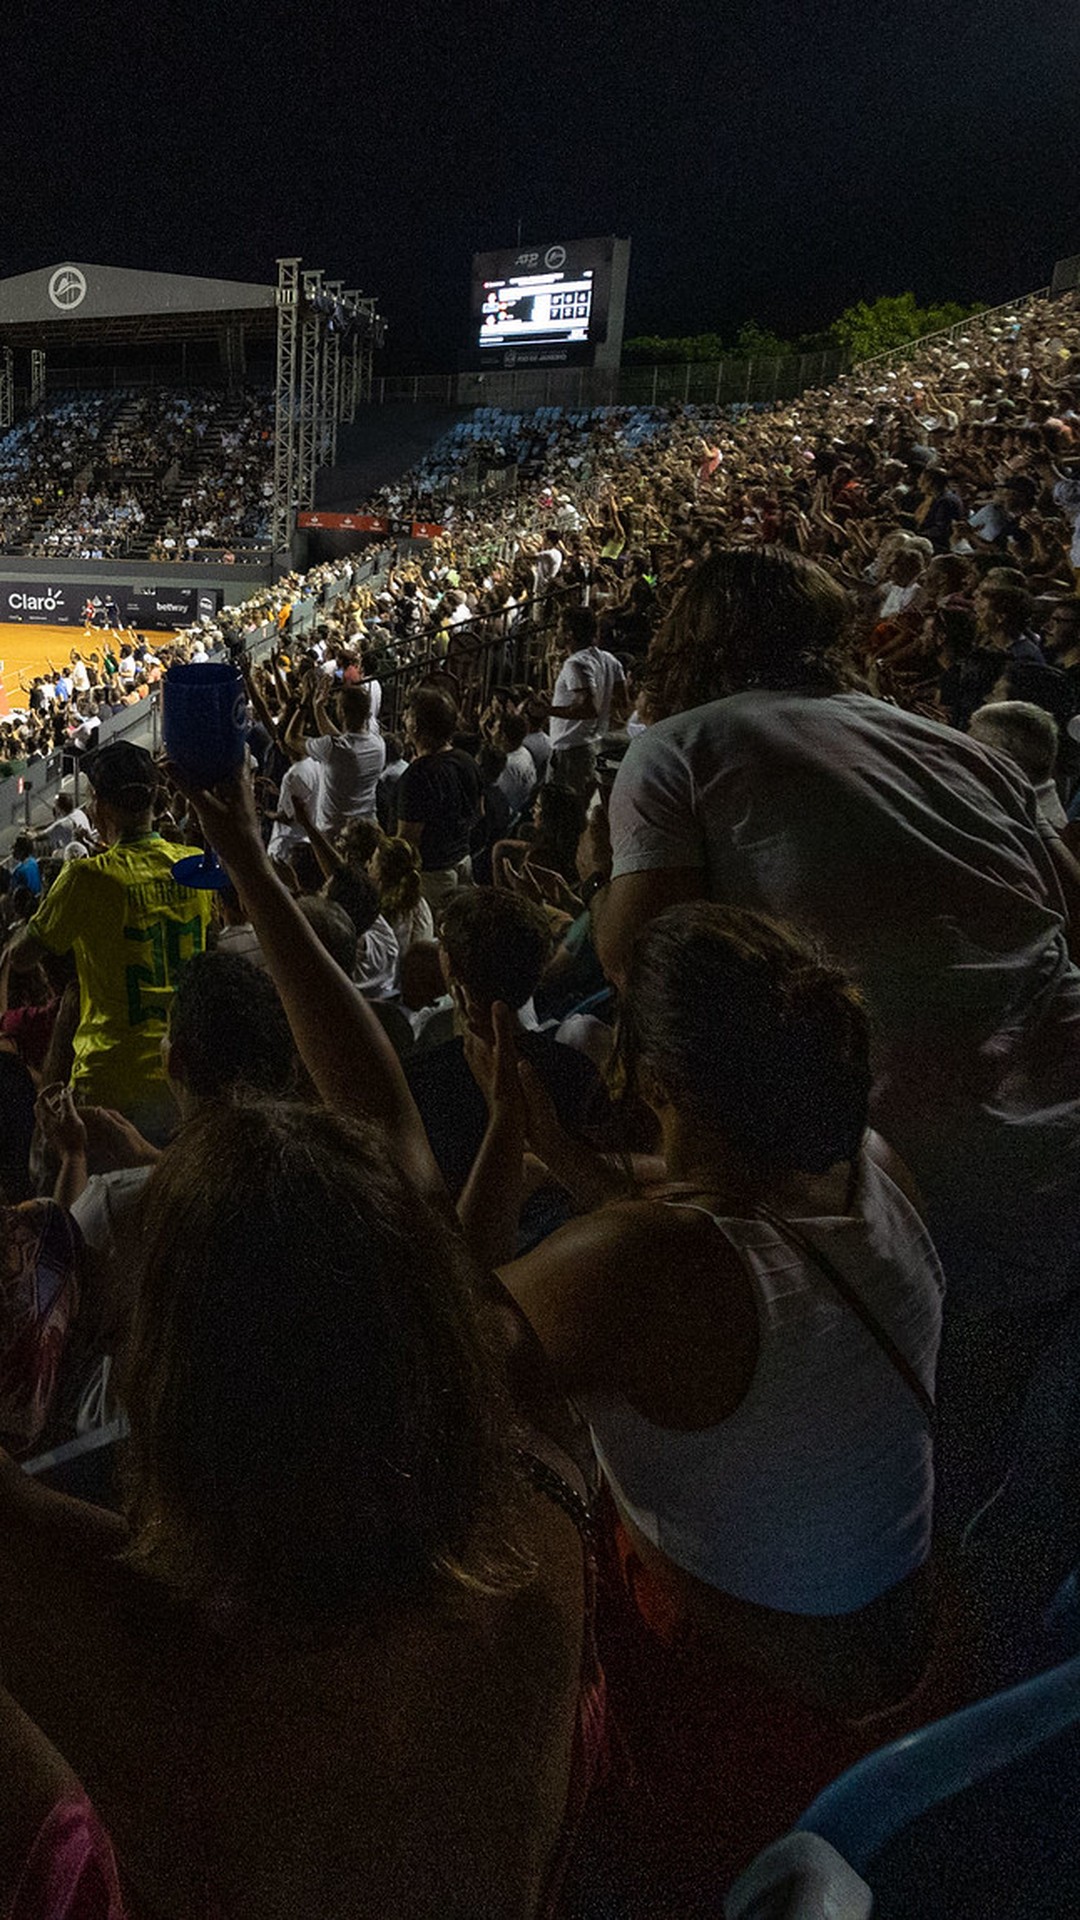 Francisco Cabral estreia-se em torneios ATP 500 no Rio de Janeiro com novo  parceiro